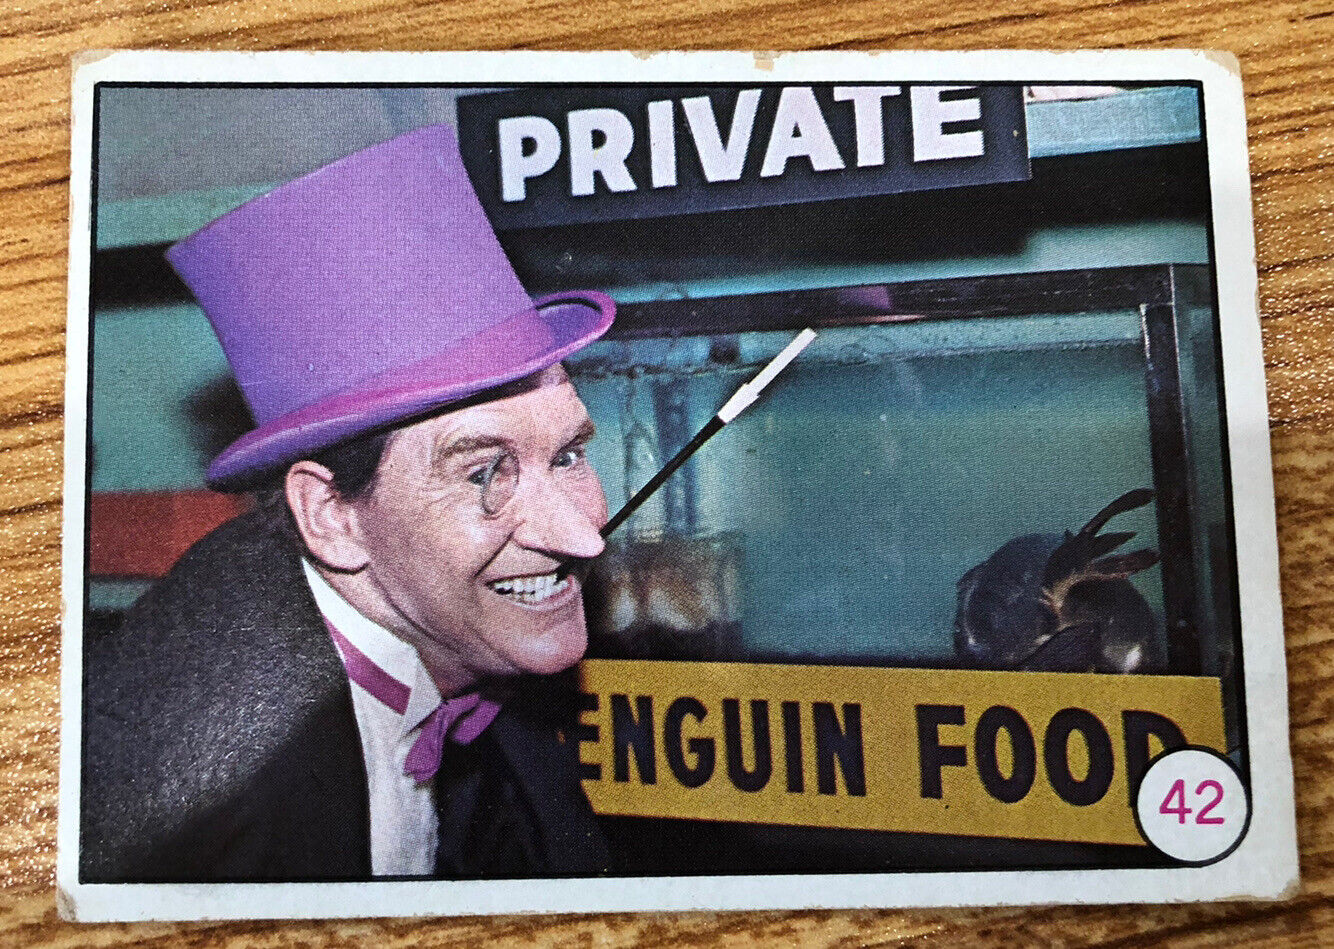 TOPPS 1966 BATMAN CARD BAT LAFFS PUZZLE BACK BUBBLE GUM CARD # 42, PENGUIN